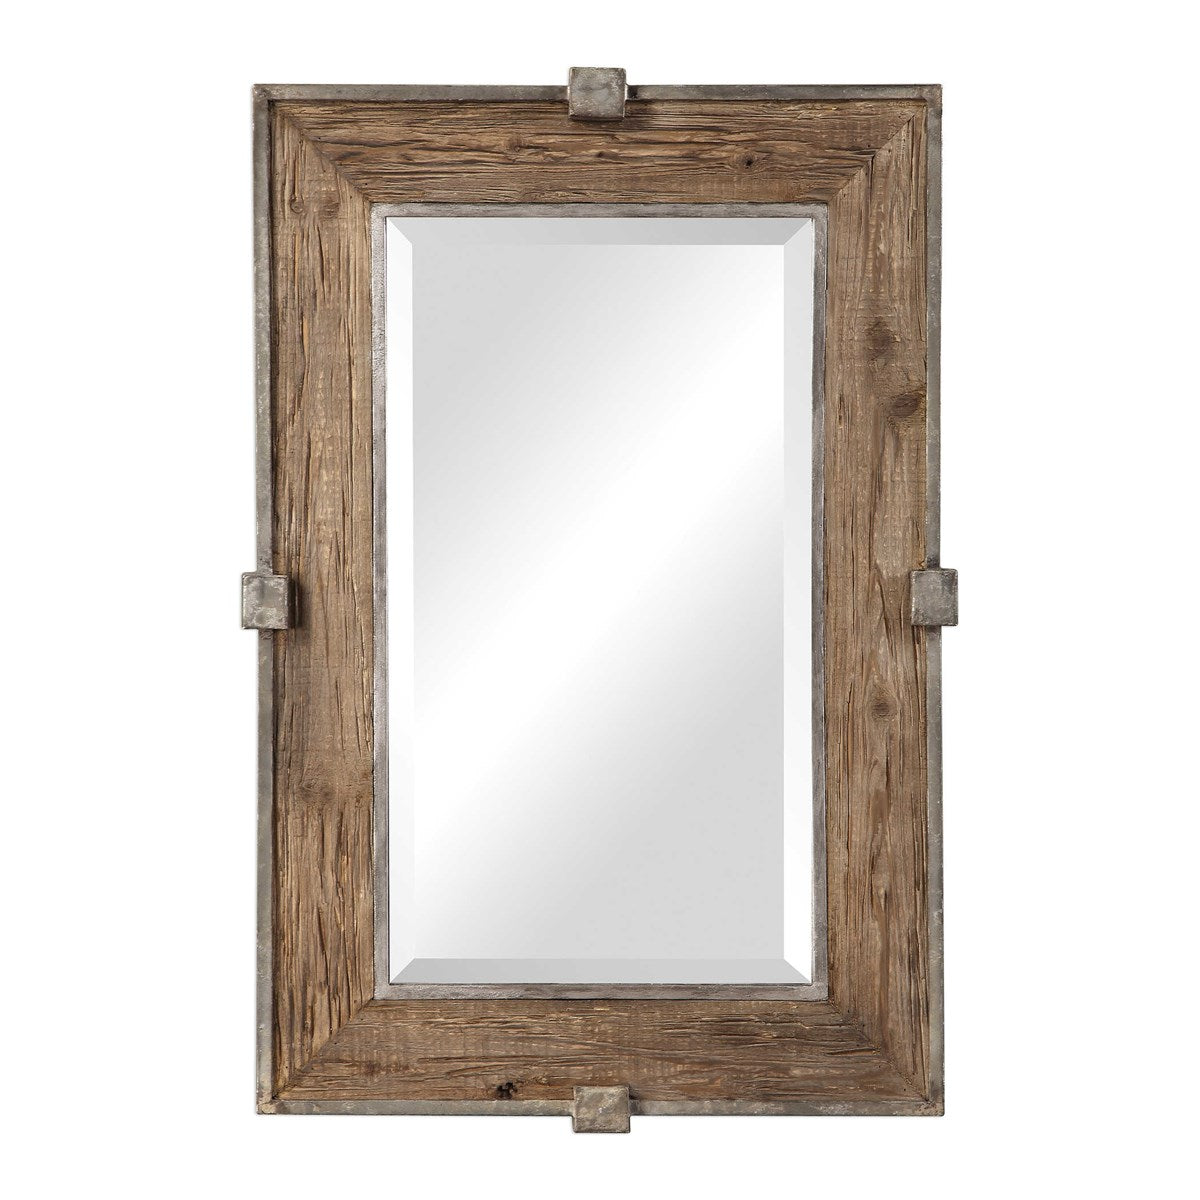 Rustic wood mirror